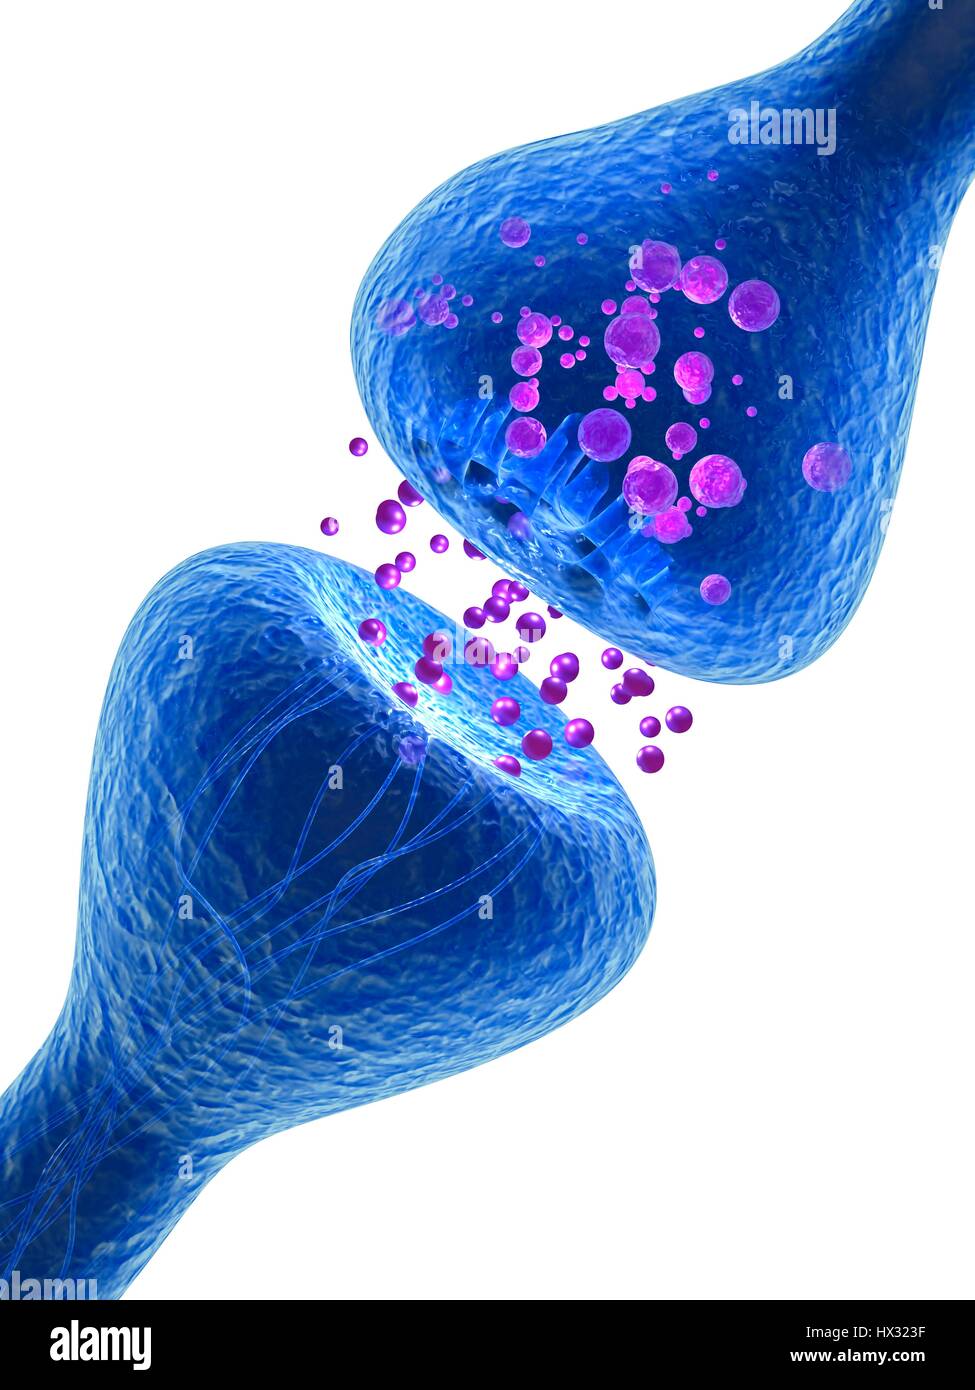 Synapse. Computer-Darstellung einer Synapse, die Verbindung zwischen zwei Neuronen. Synapsen übertragen elektrische Signale von einer Nervenzelle zur nächsten. Wenn das Signal die Synapse erreicht löst es die Freisetzung von Chemikalien, so genannte Neurotransmitter. Die Neurotransmitter überqueren eine mikroskopisch kleine Lücke, genannt der synaptischen Spalt und gelangen durch Kanäle in den Rezeptor Nervenzelle (oben), wo sie einen elektrischen Impuls auslösen. Stockfoto